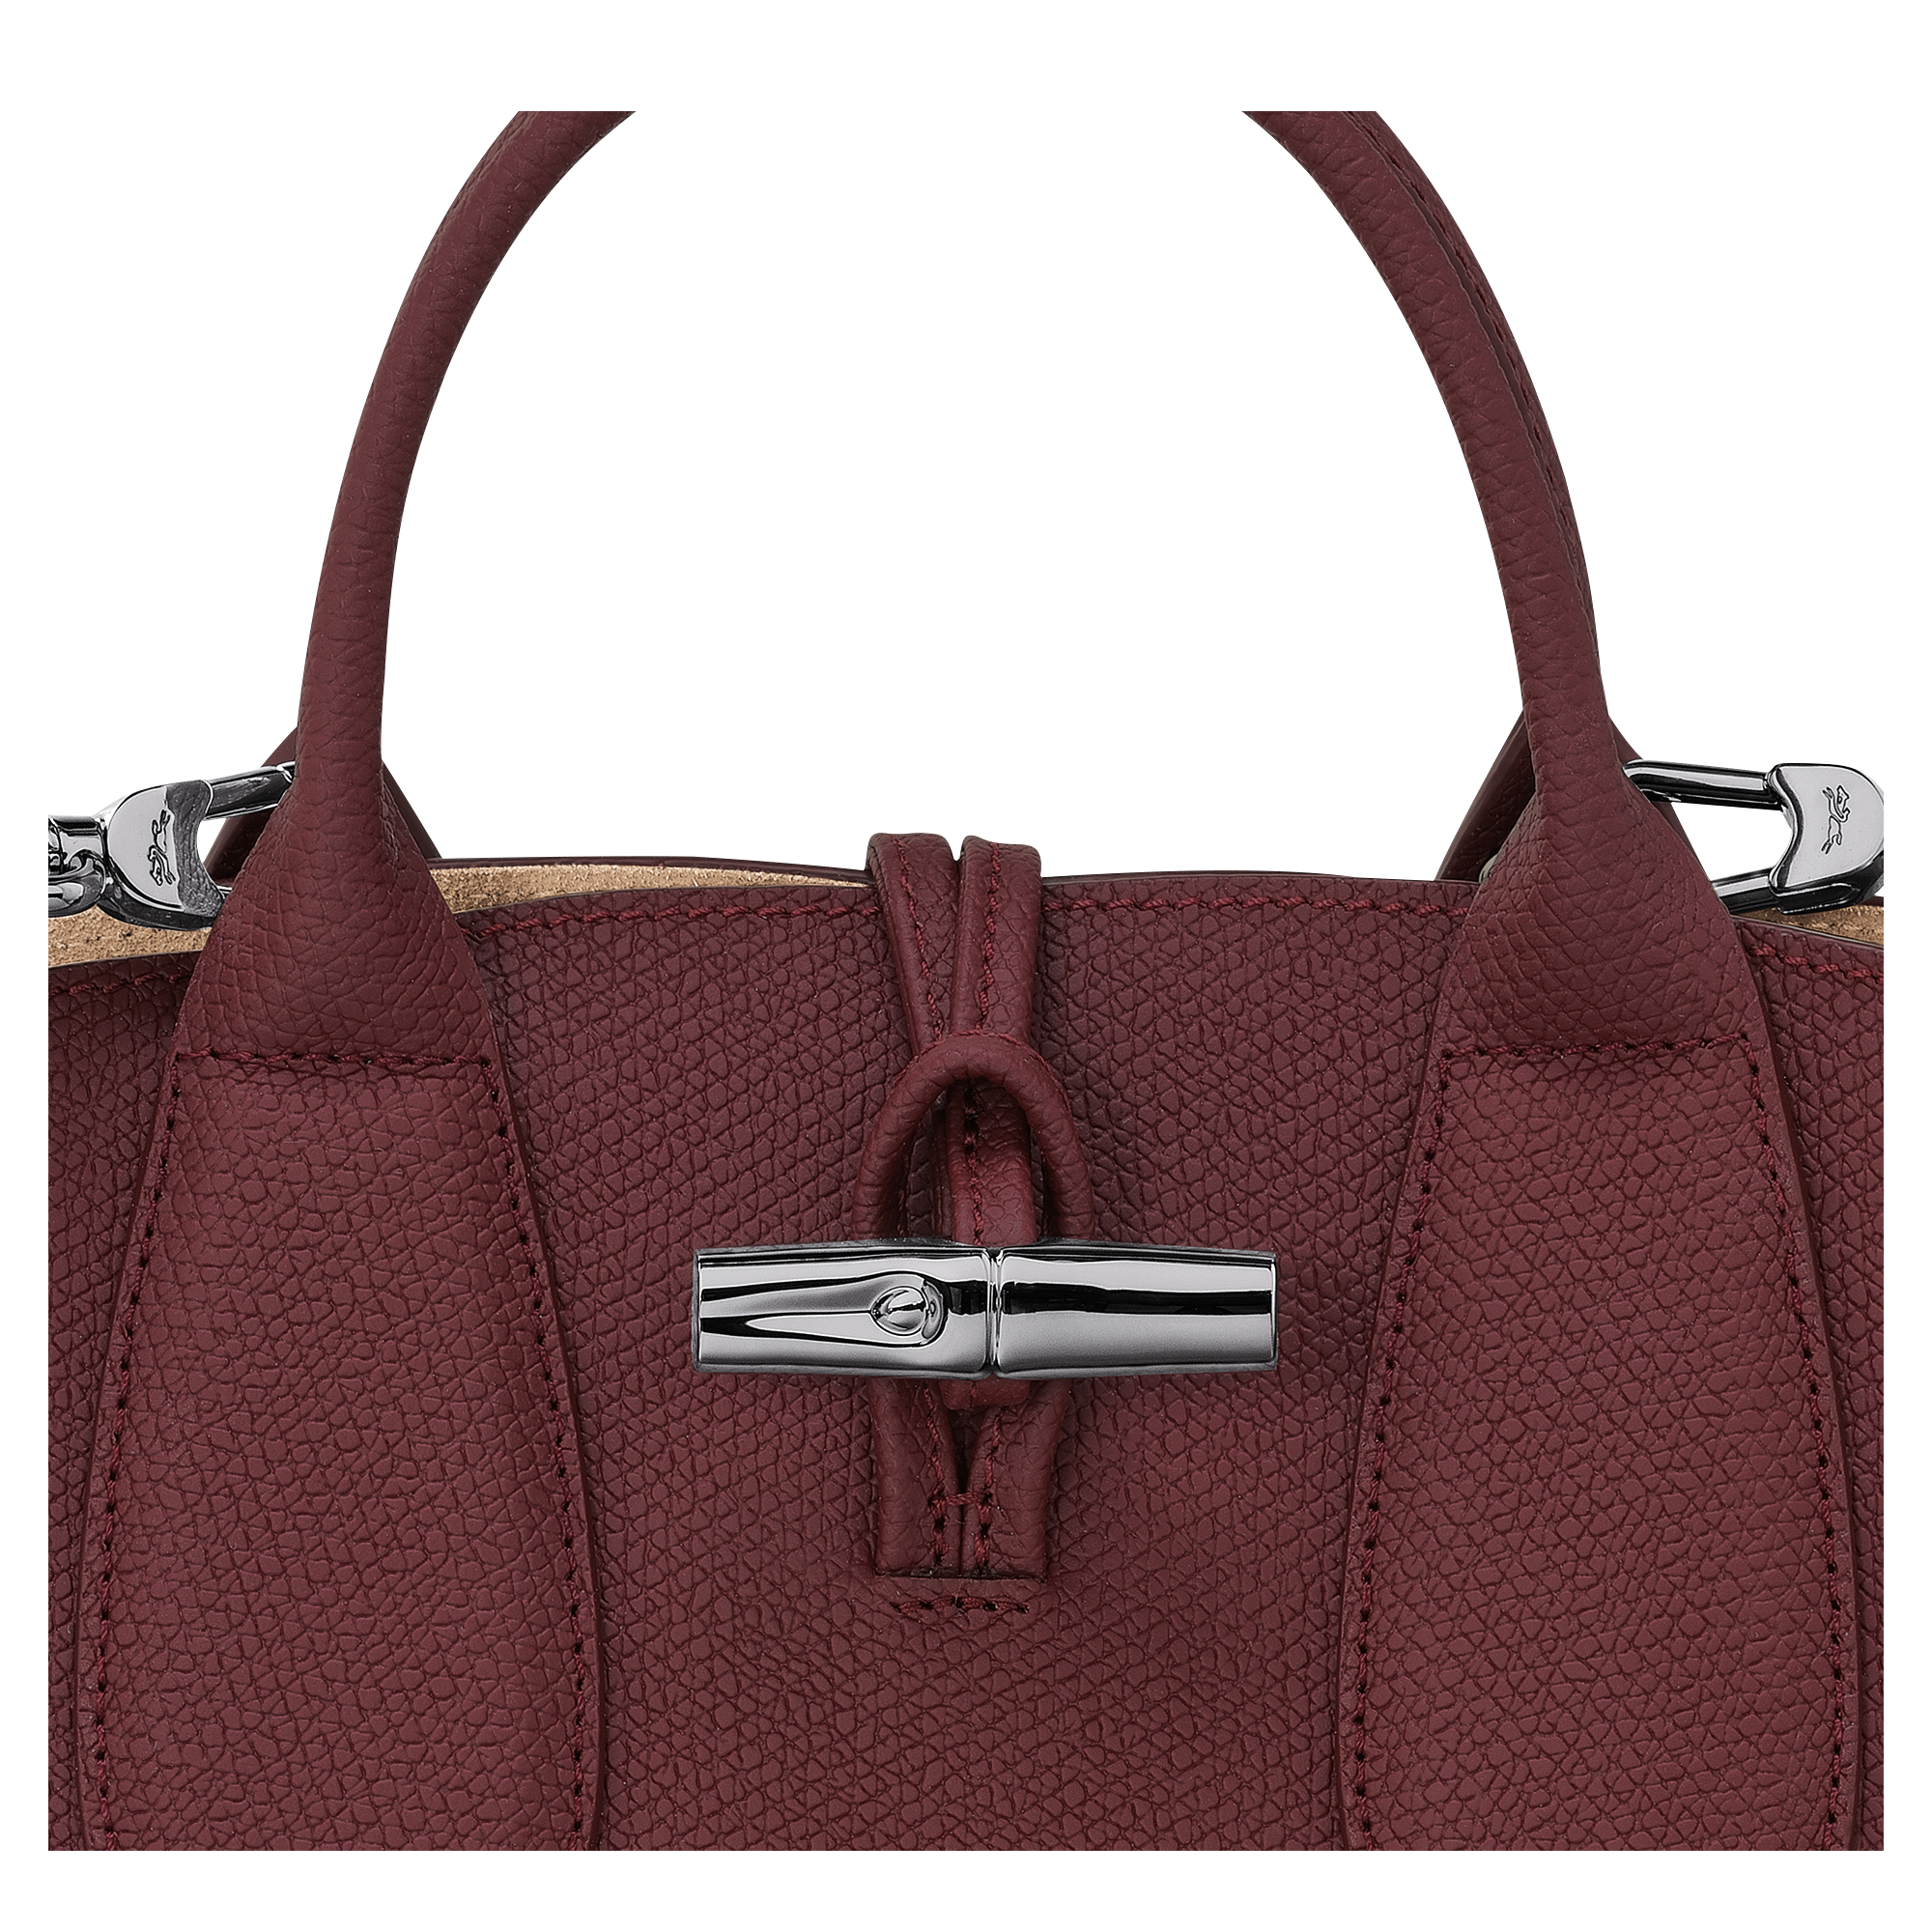 ROSEAU - Handbag S